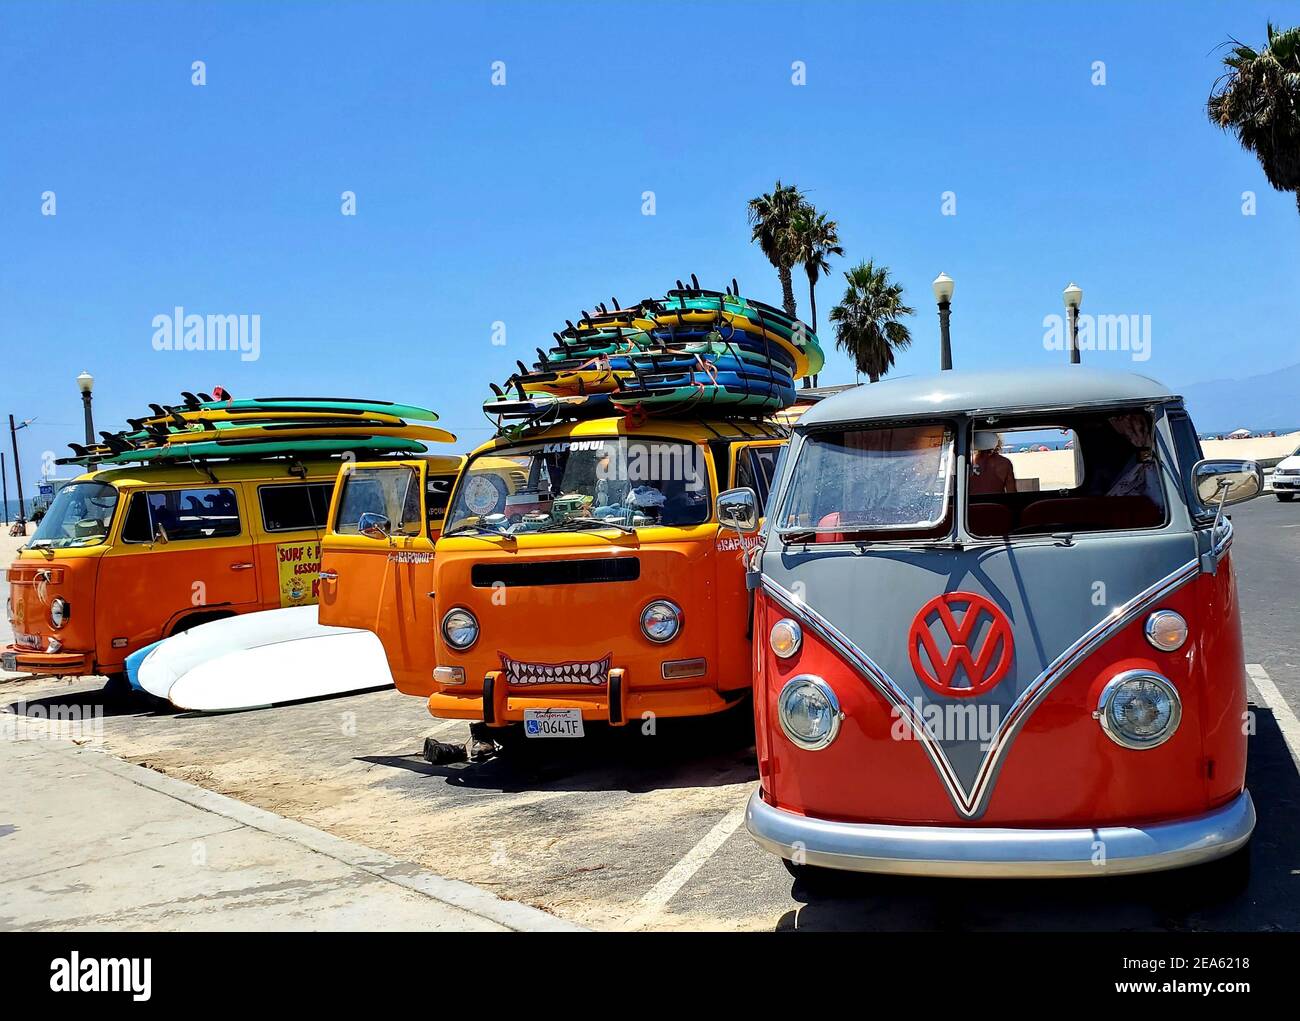 Vw bus und in -Fotos hoher Auflösung beach – surf -Bildmaterial Alamy